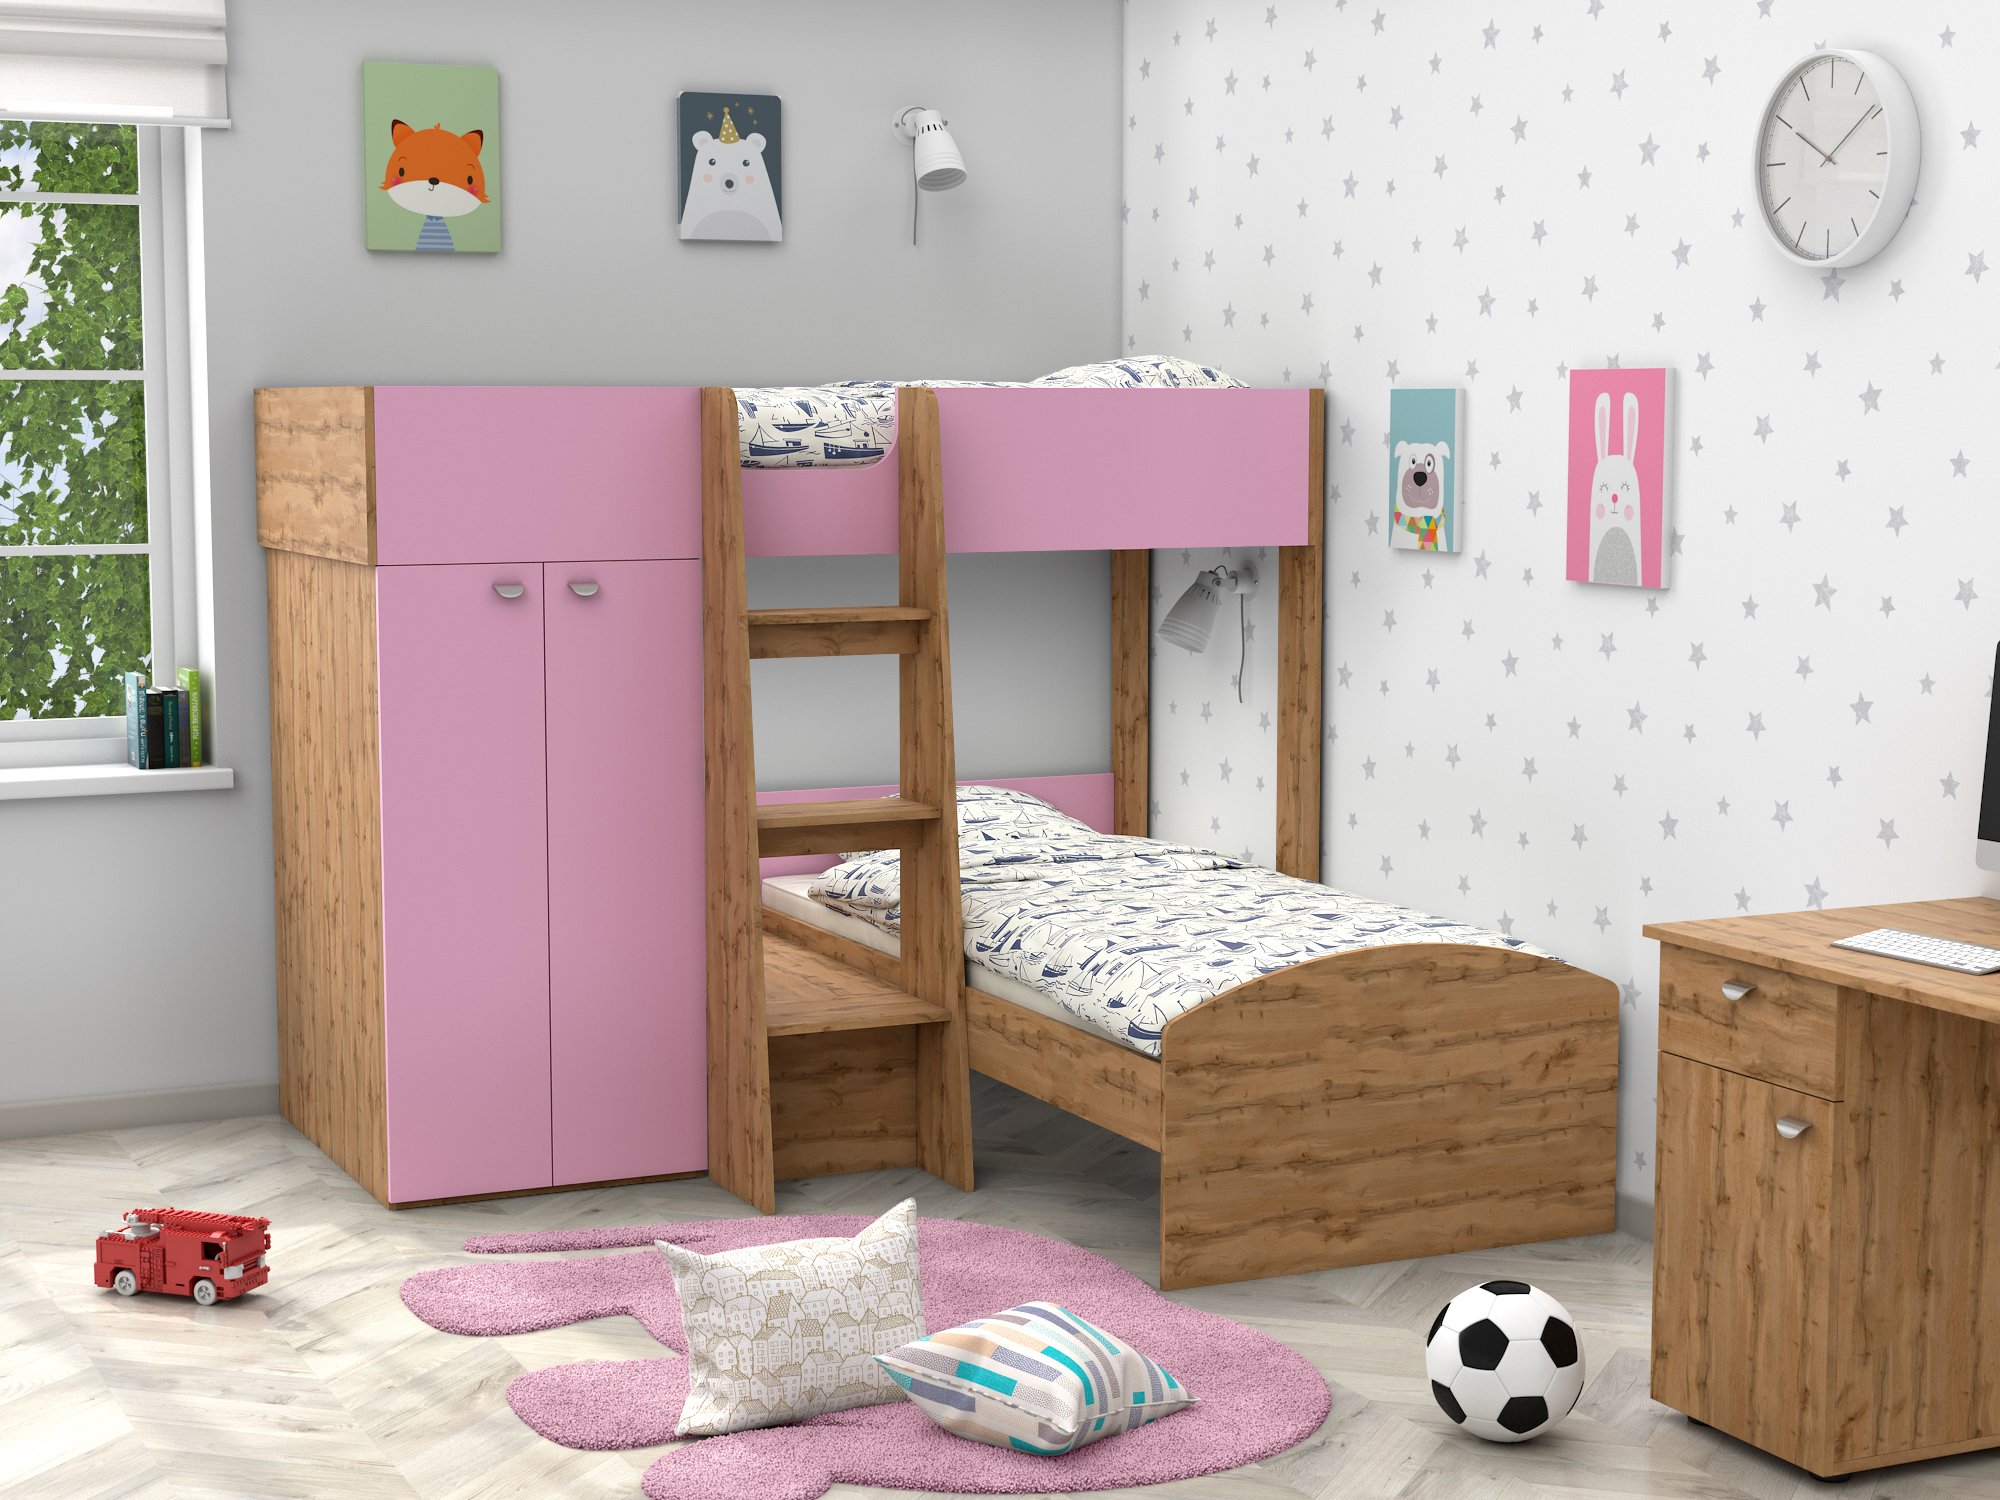 Двухъярусная кровать Golden Kids-4 (90х200) Розовый, Бежевый, ЛДСП двухъярусная кровать golden kids 4 90х200 венге коричневый темный бежевый лдсп